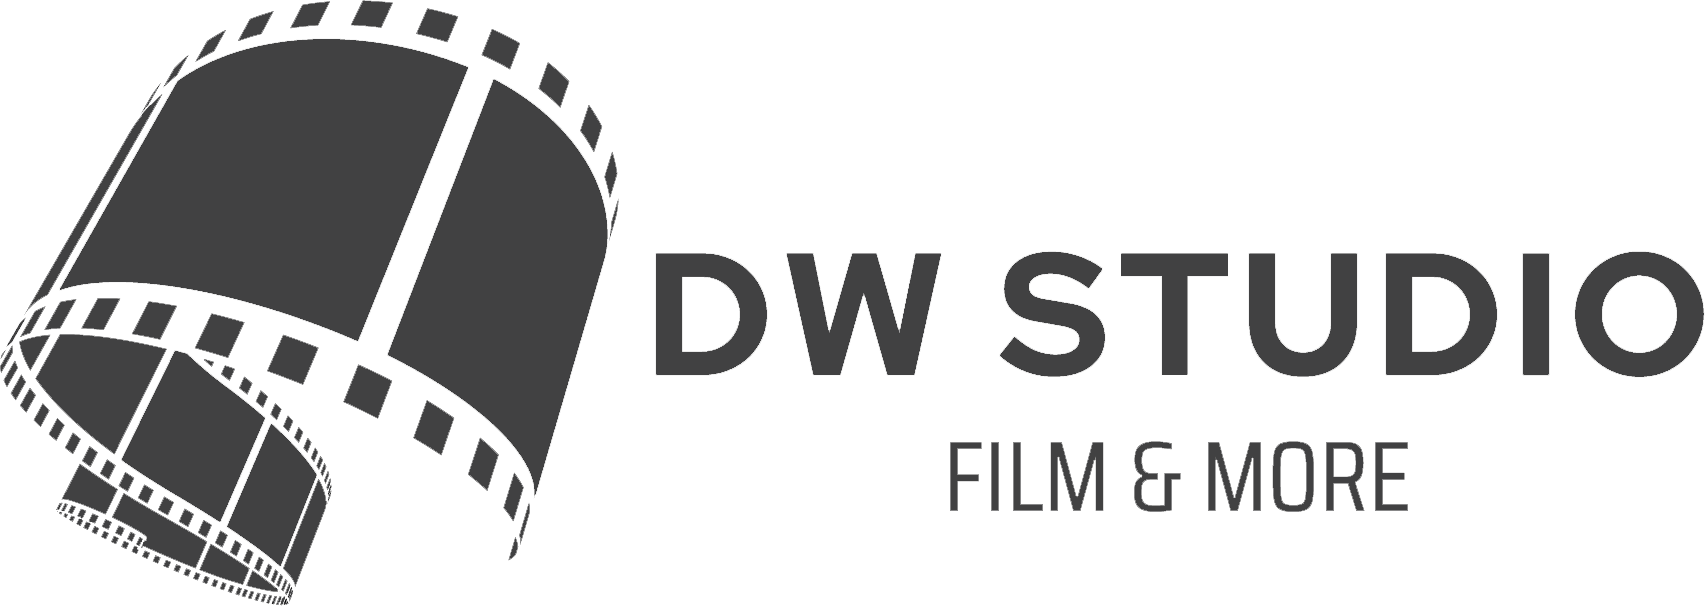 DW STUDIO | Film & More